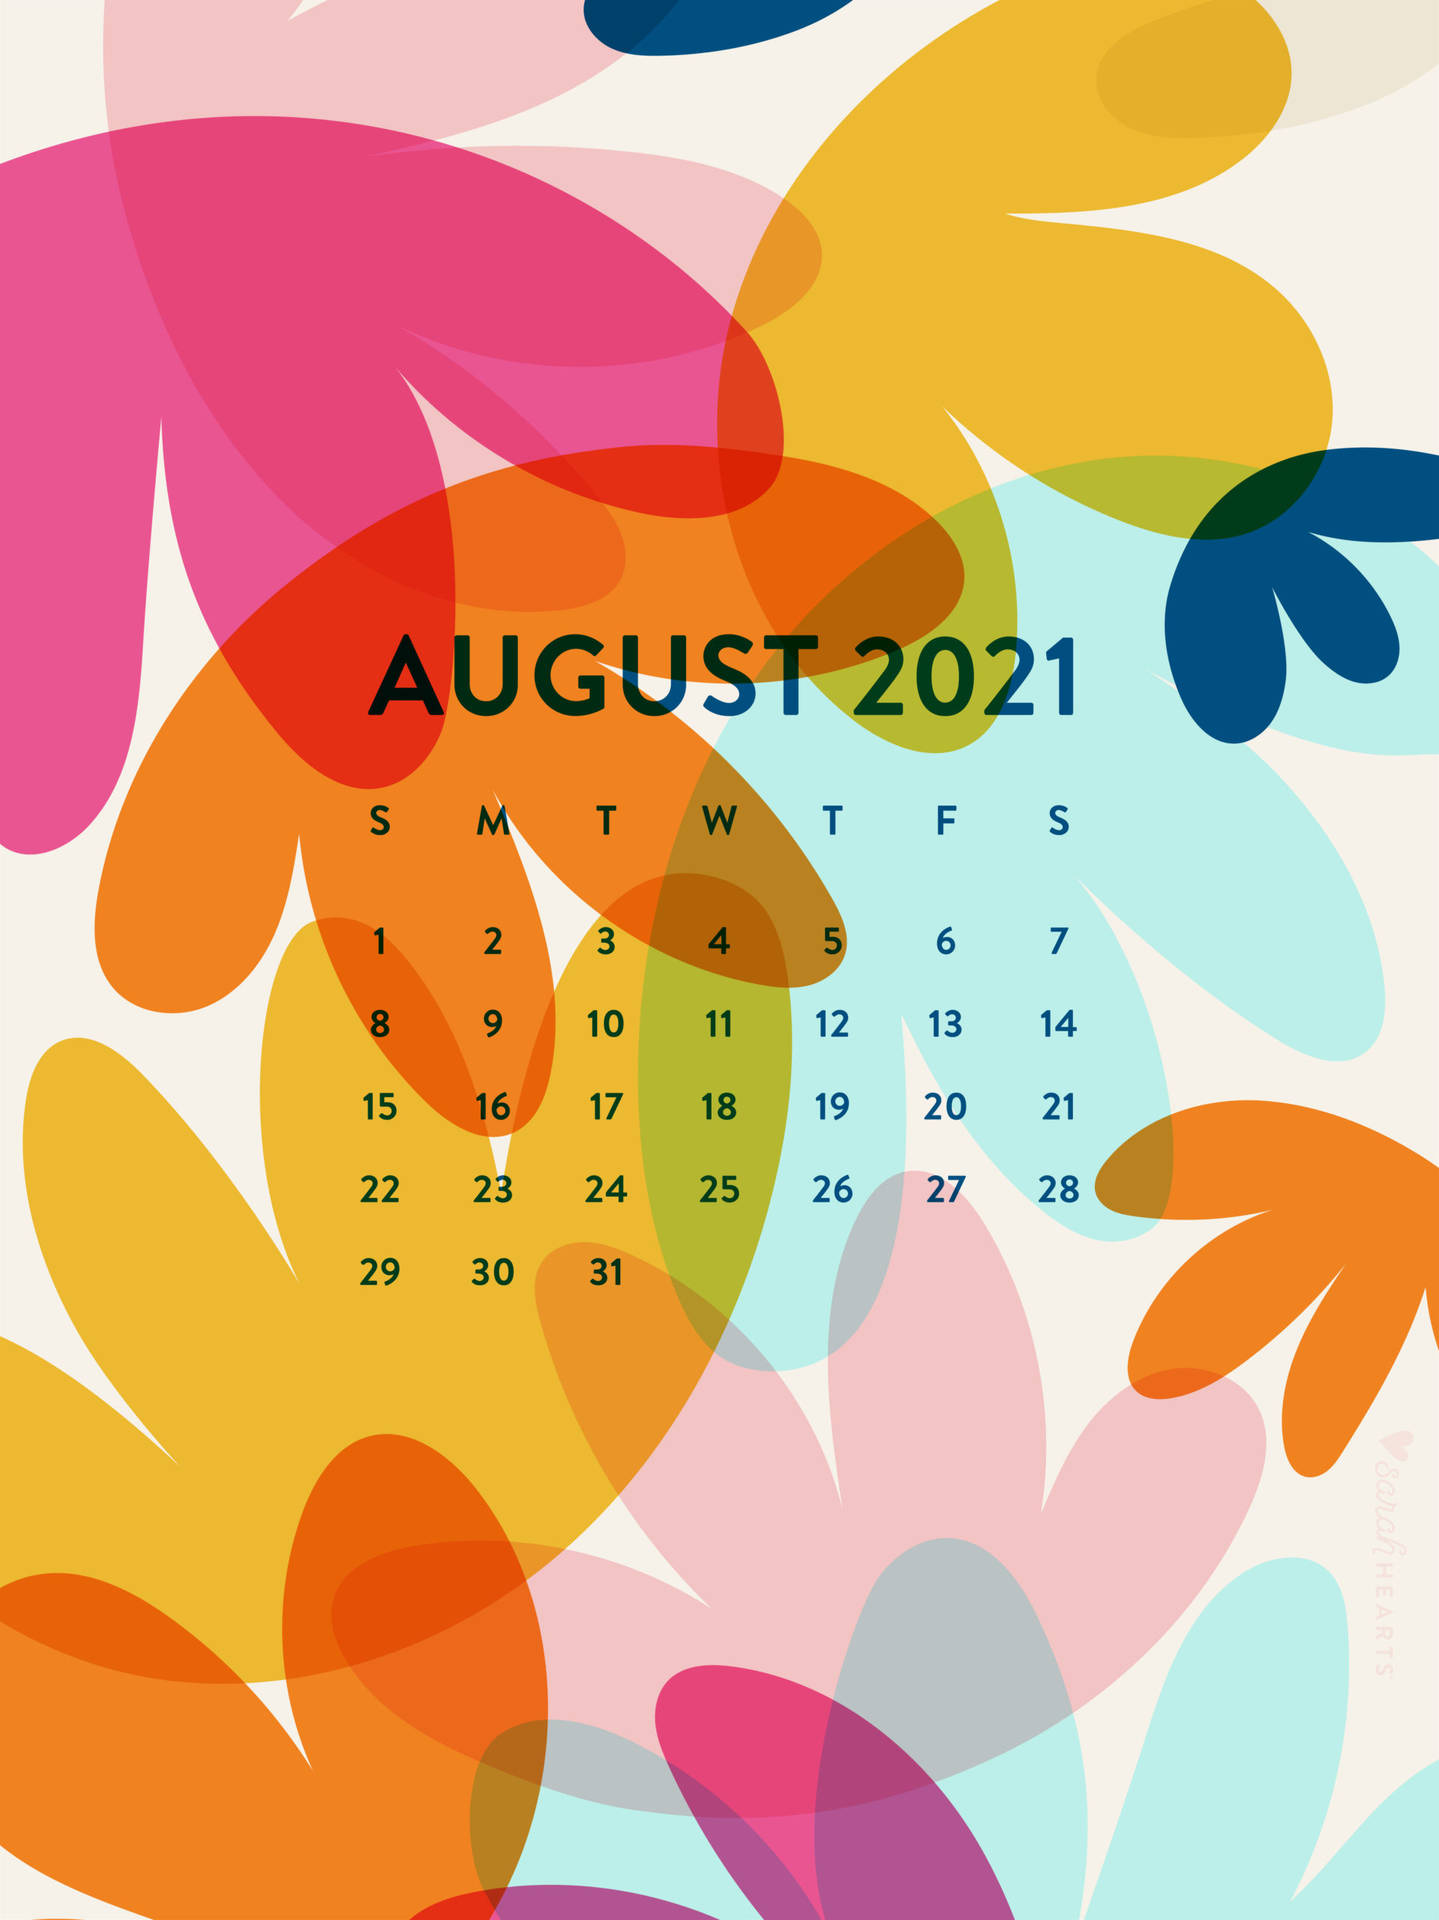 Imagens Do Calendário De Agosto De 2021